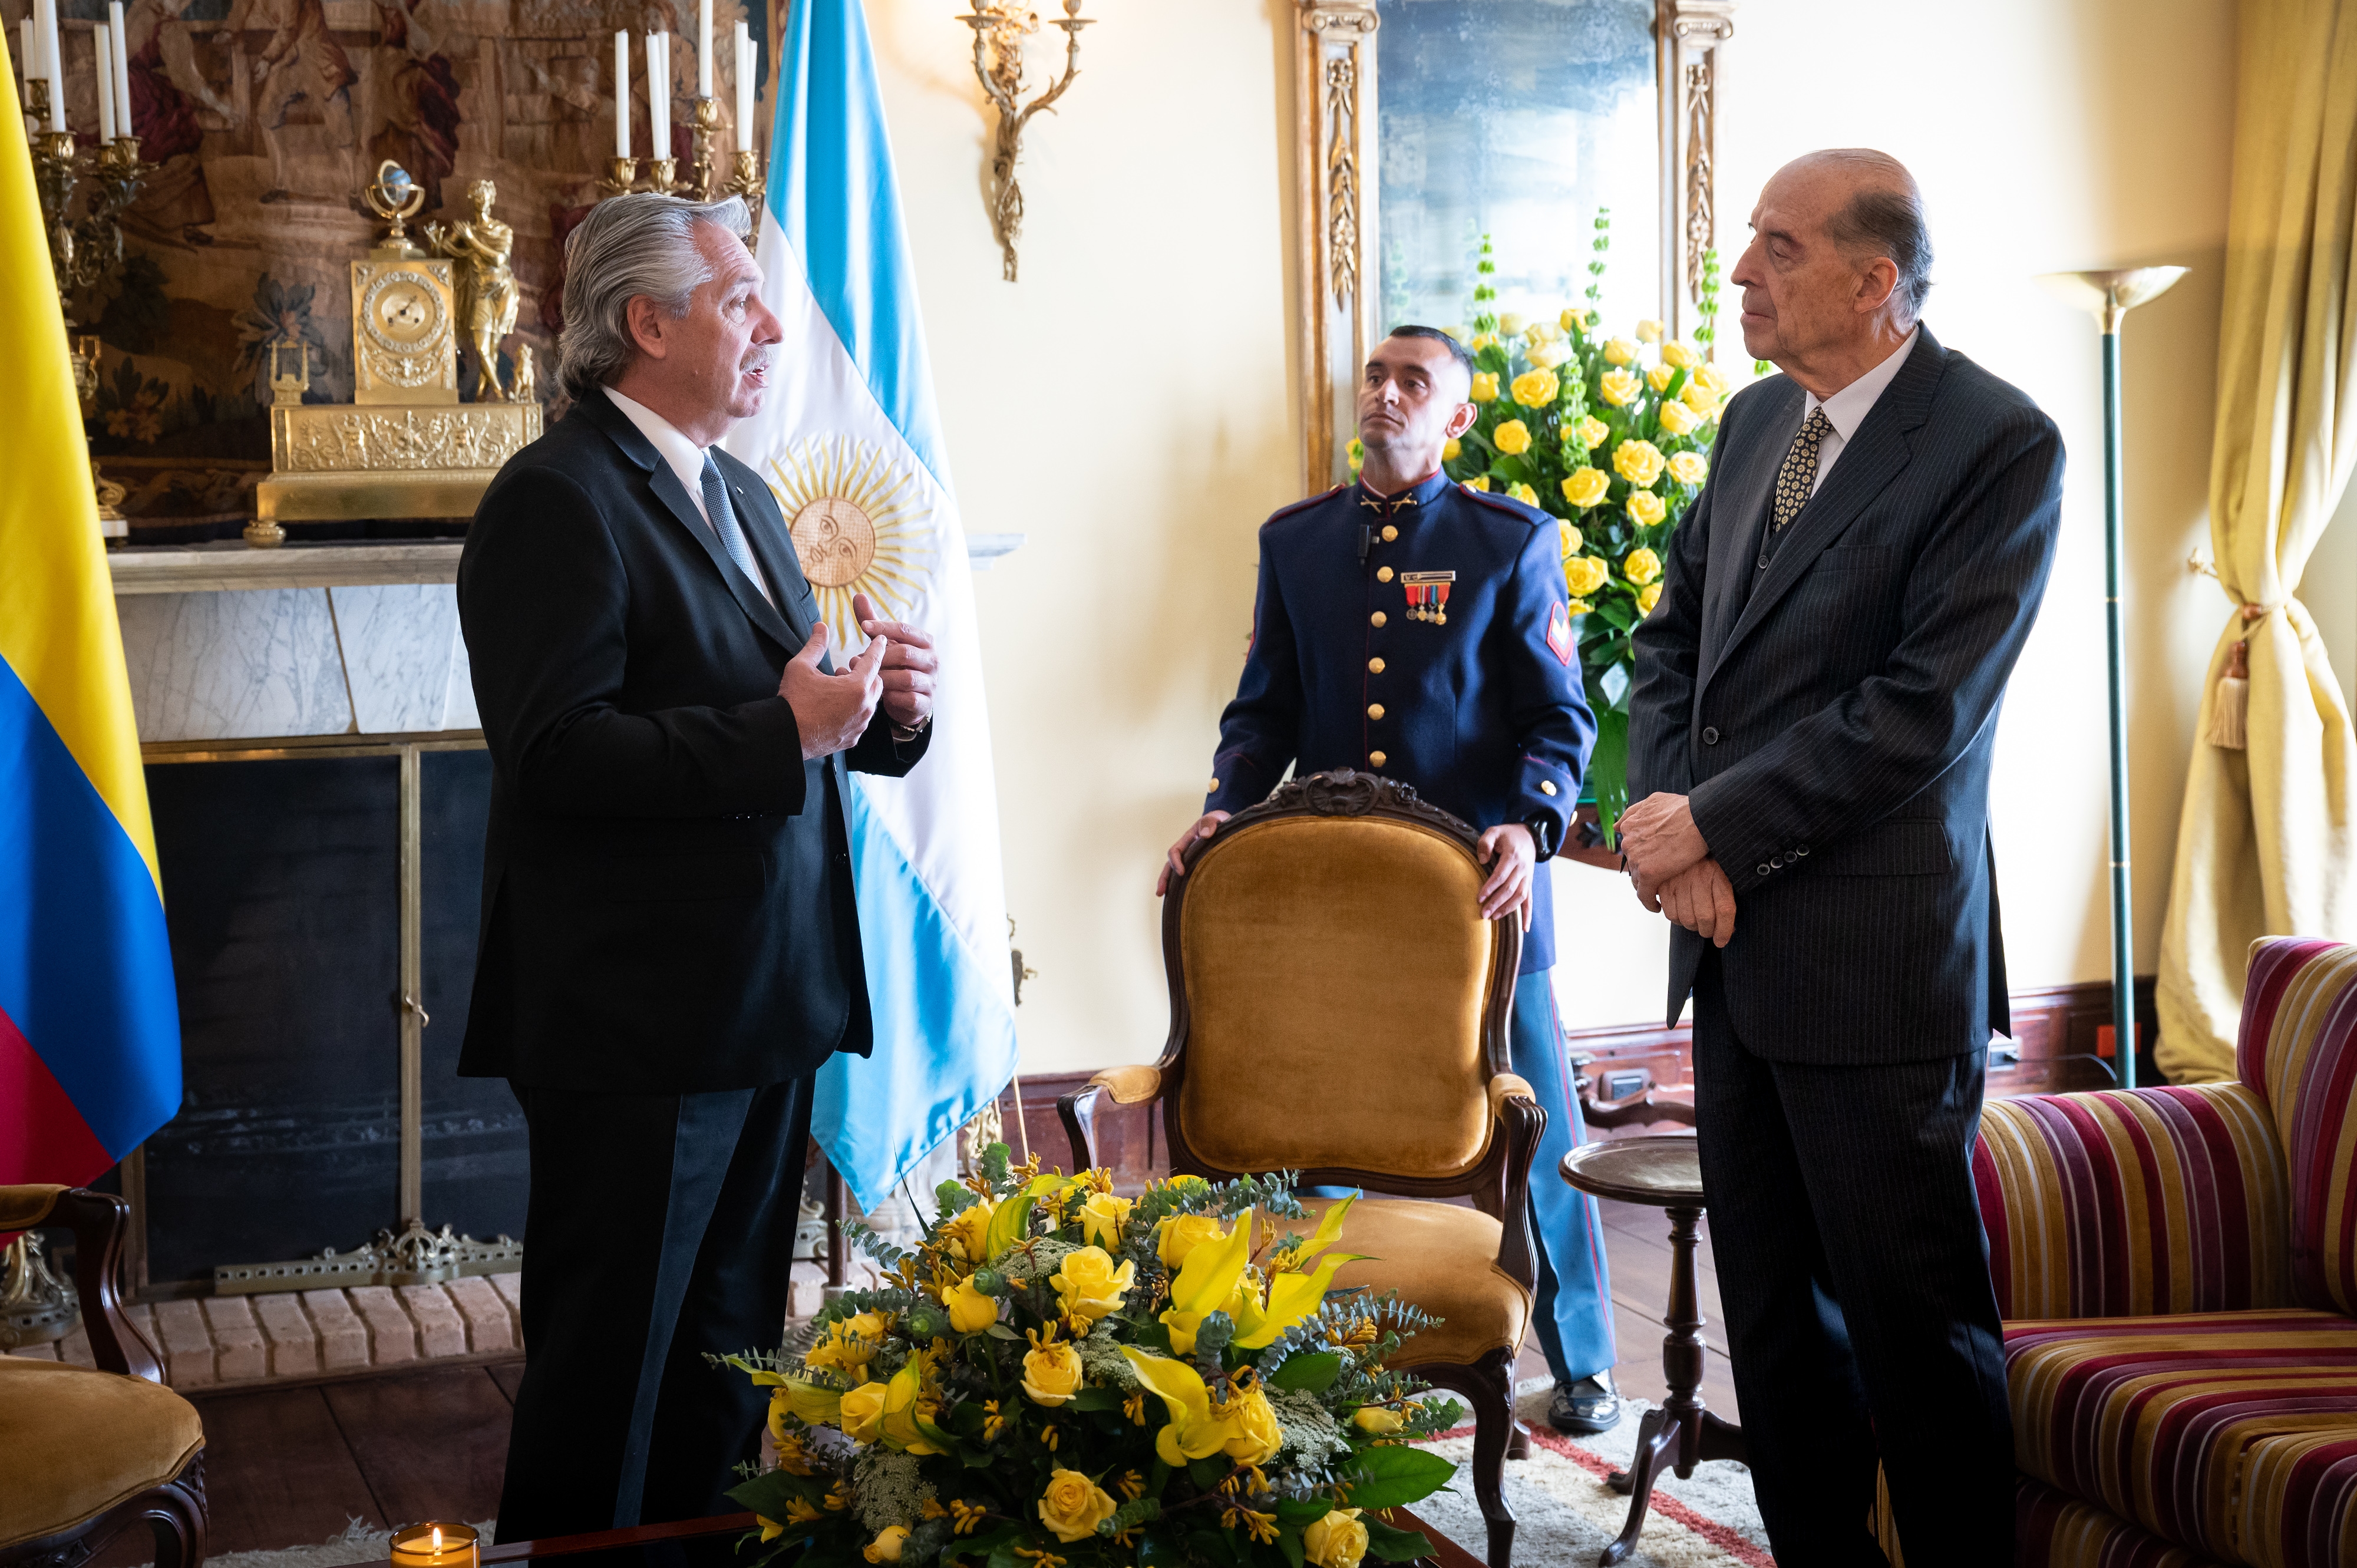 Con el mensaje de fortalecer la integración latinoamericana se realizó el encuentro entre los presidente de Colombia y Argentina